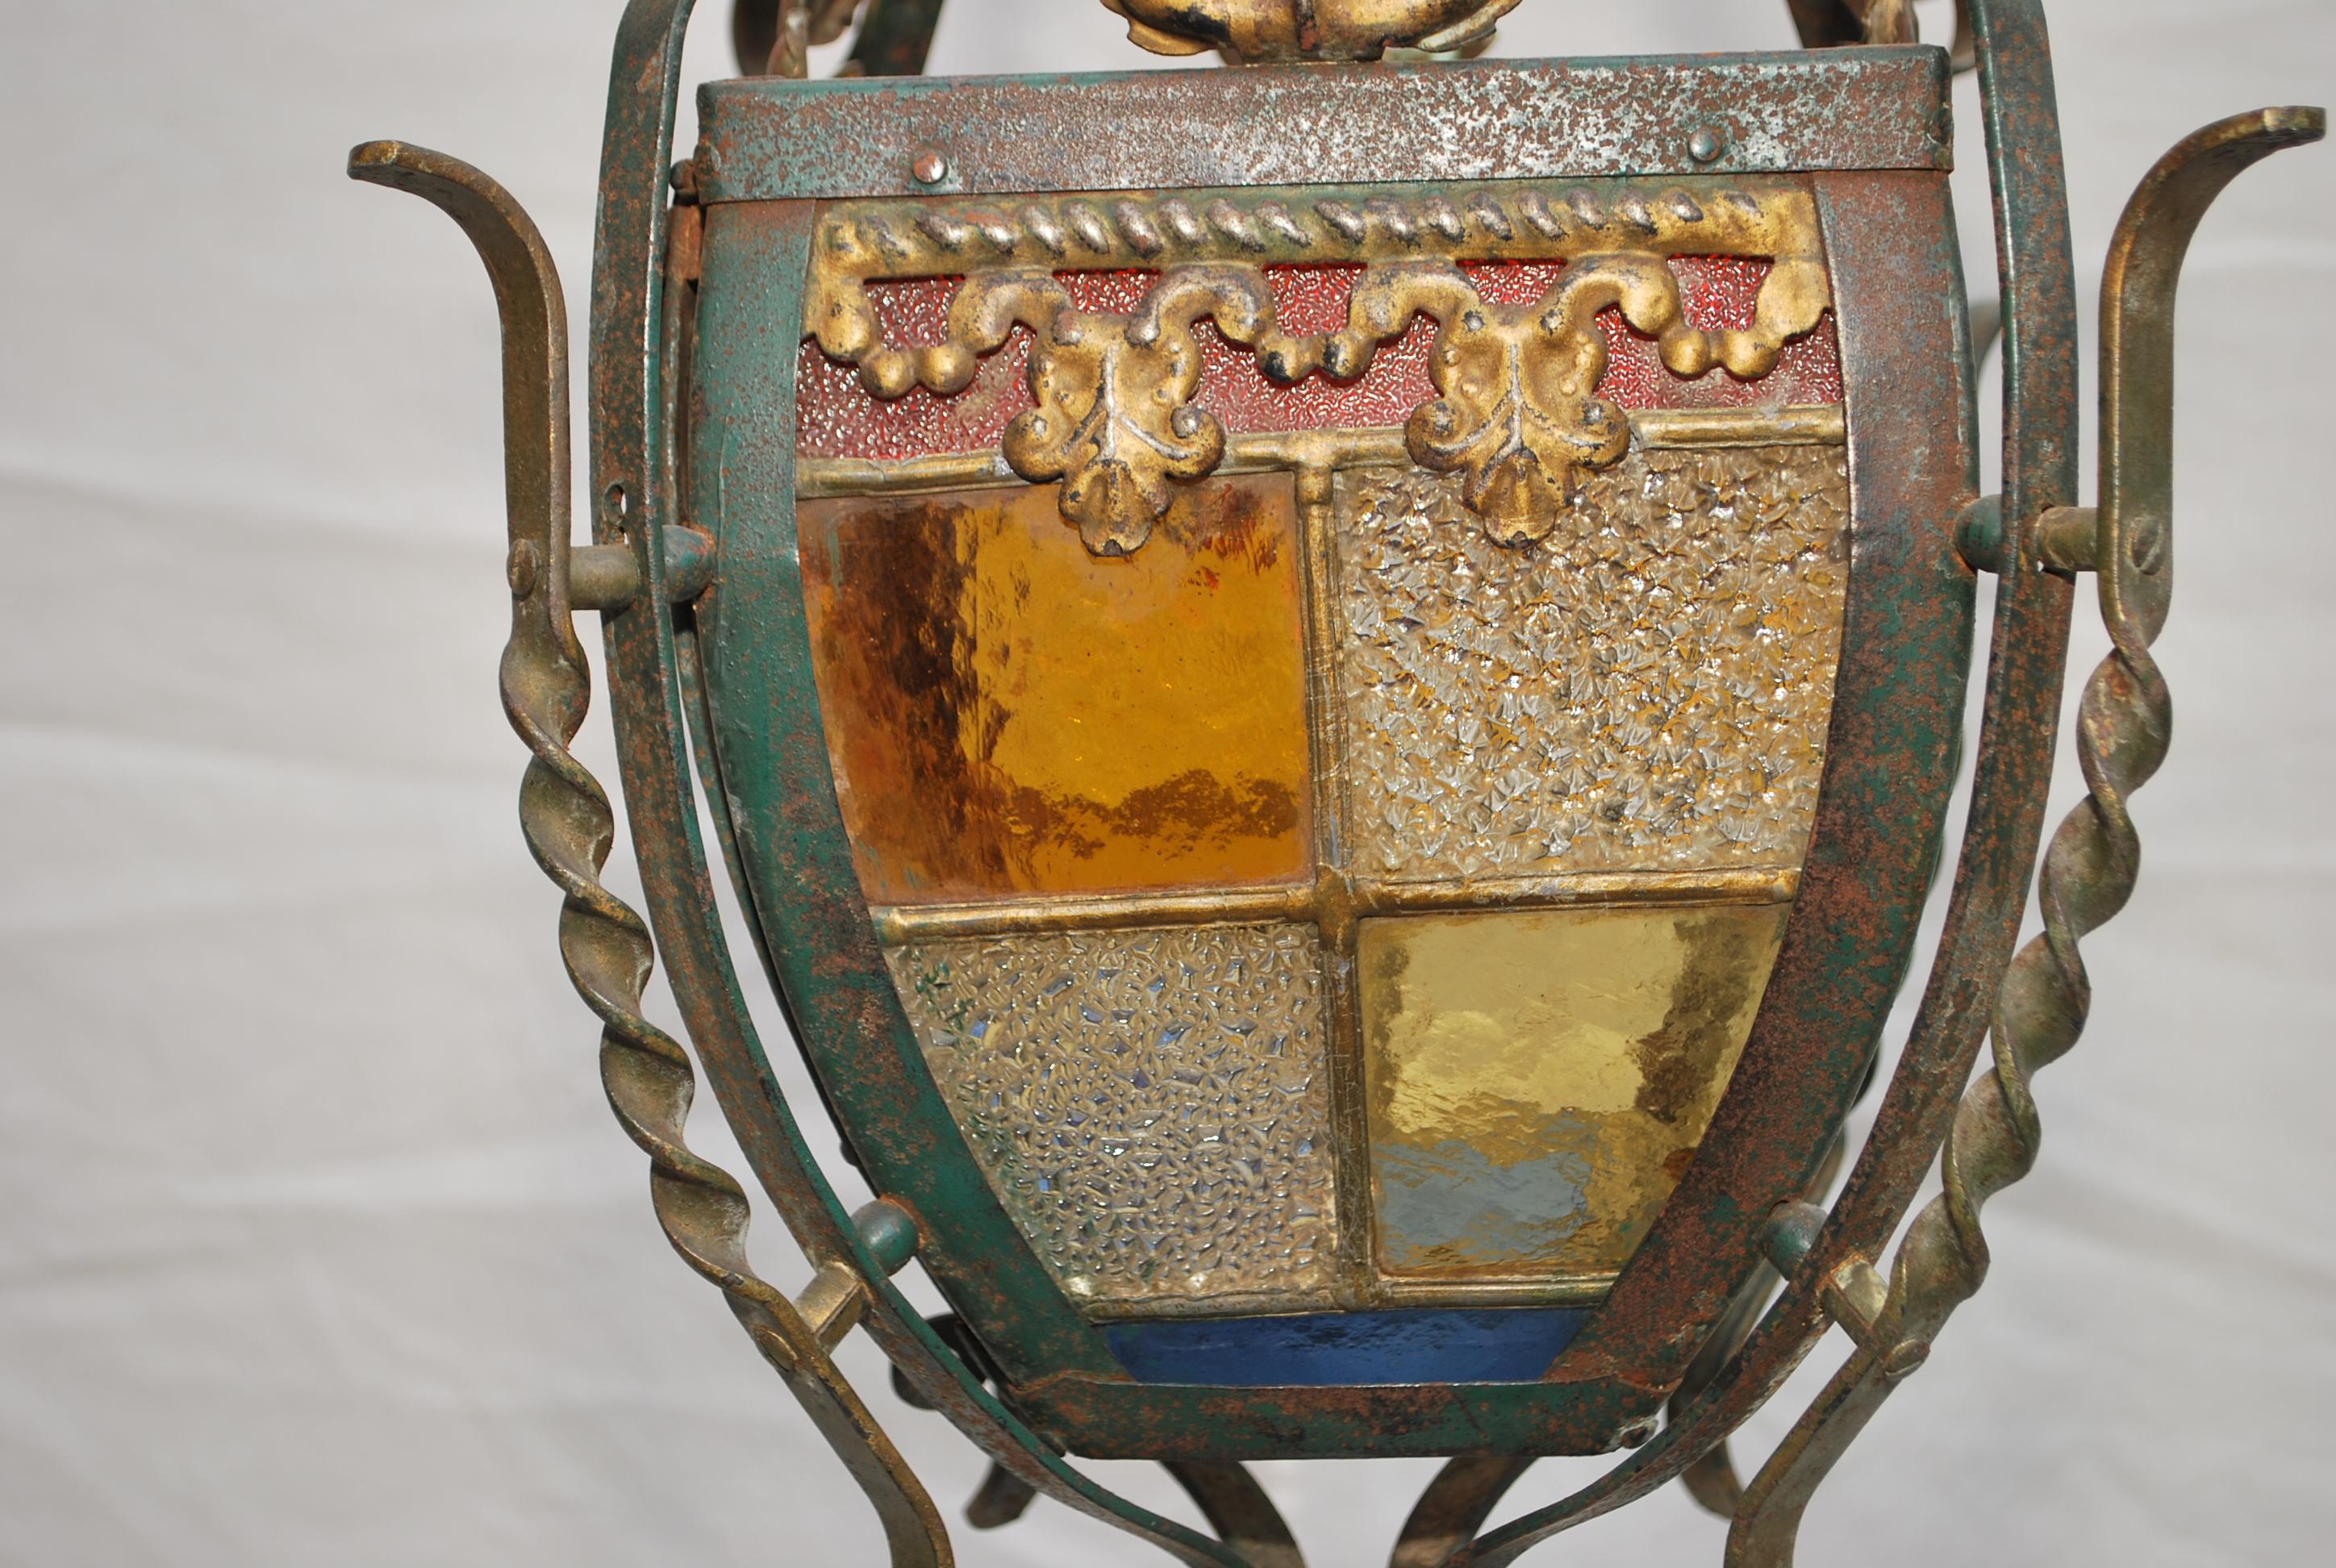  Une belle lanterne des années 1920, le verre est magnifique, la patine est plus belle en personne.